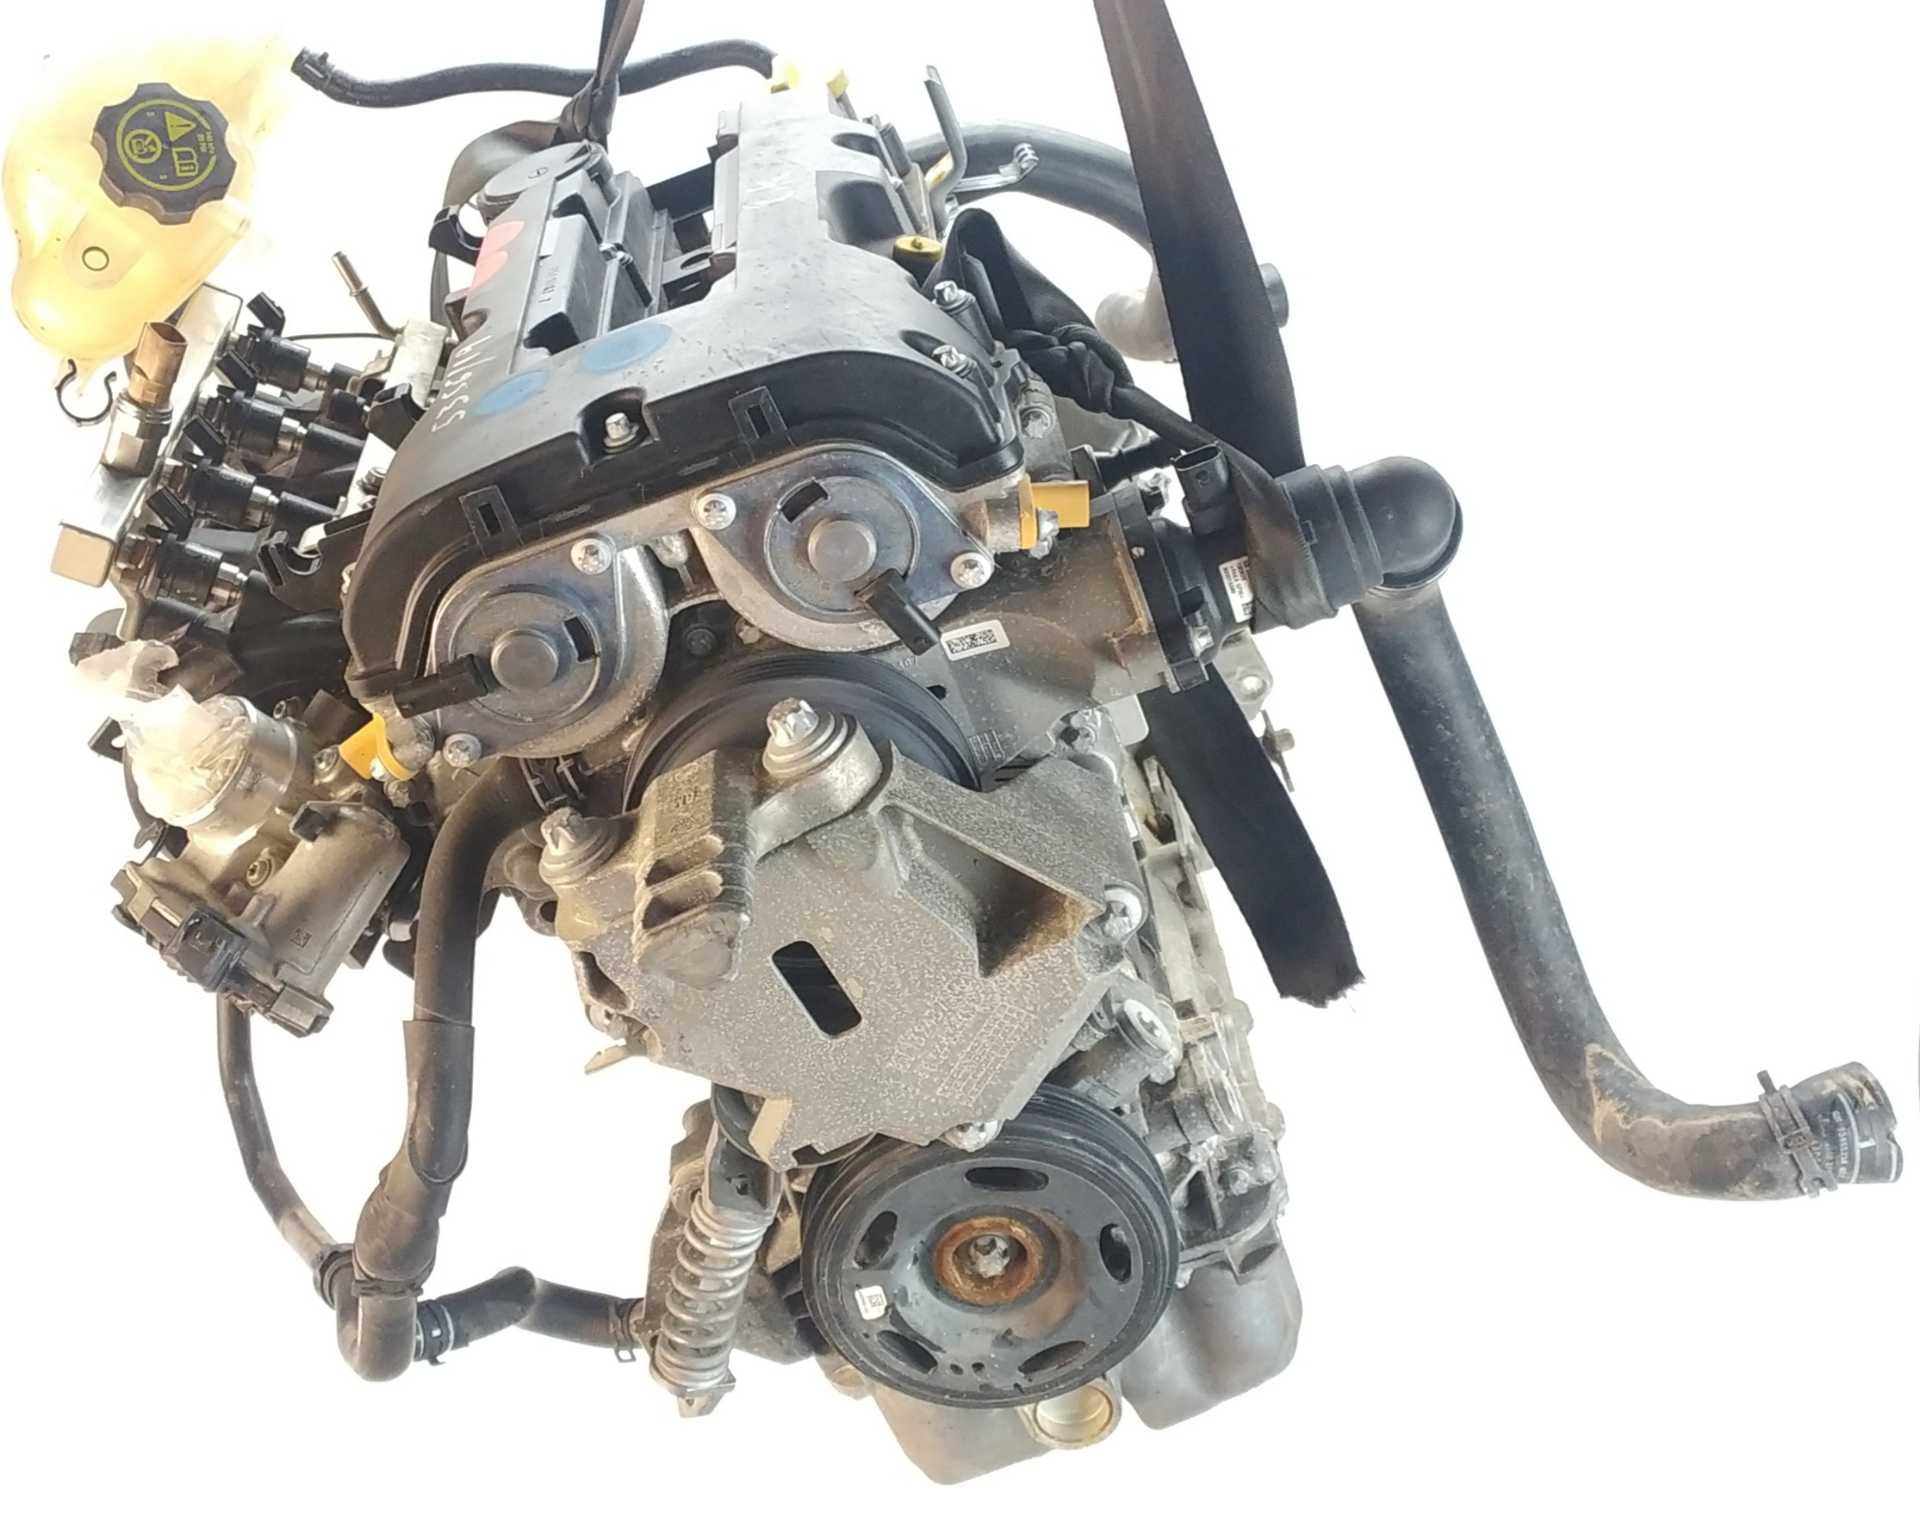 MOTOR OPEL CORSA E 1.4 LPG (08, 68) (66 KW / 90 CV) (03.2015 - ...)